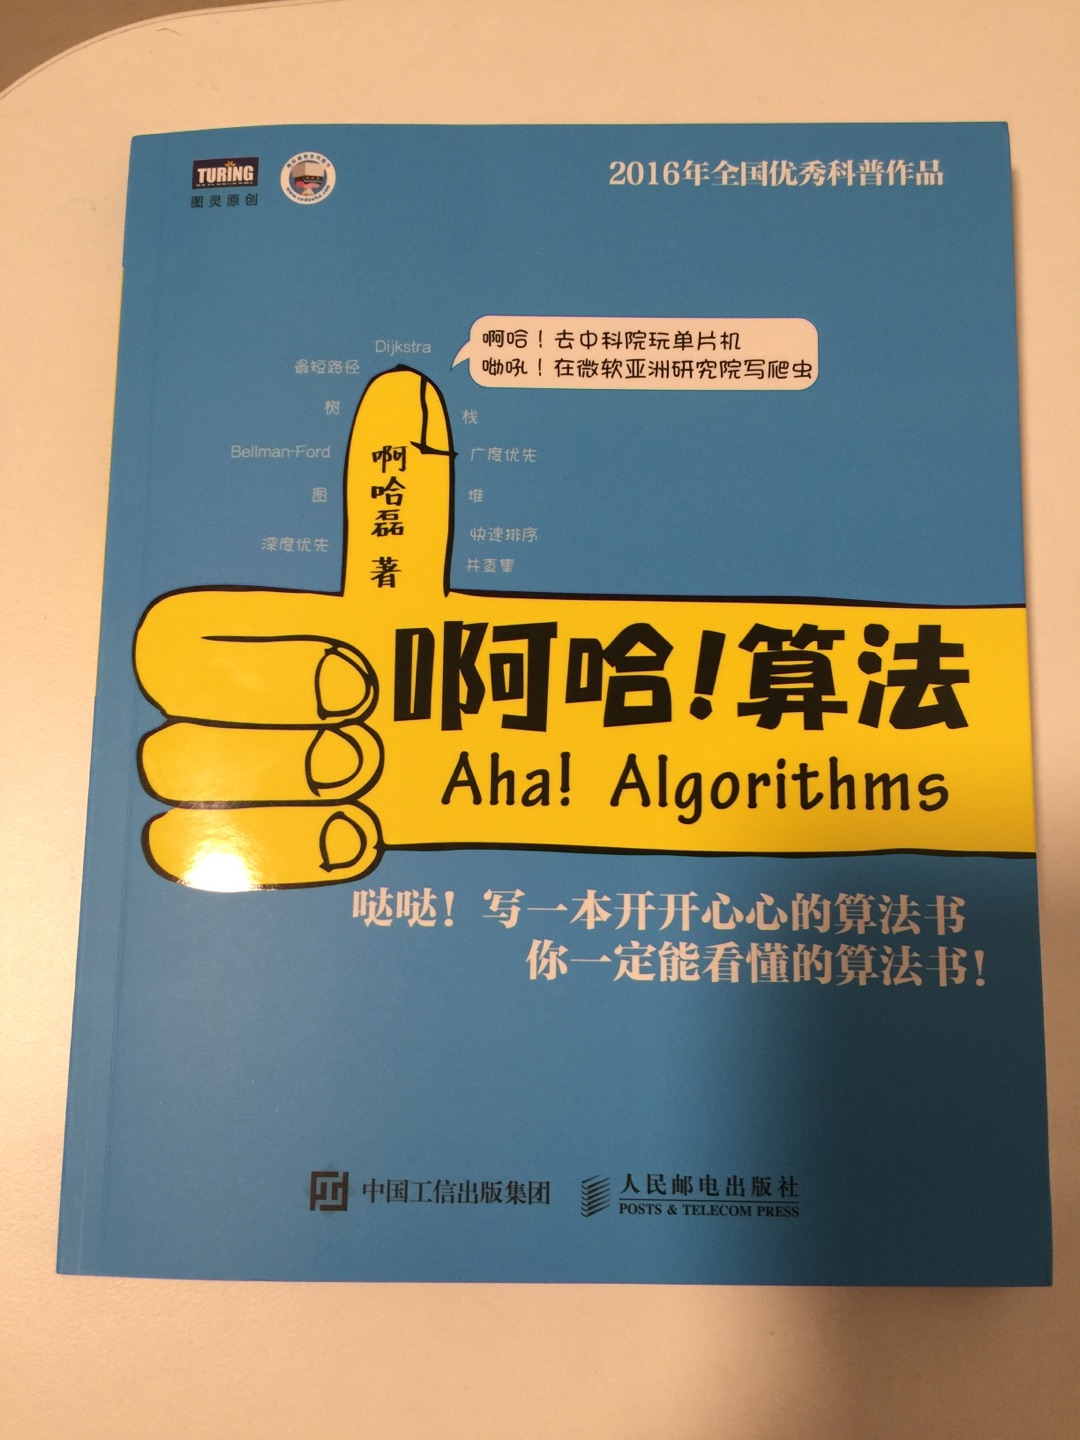 知道啊哈磊是从网上看到啊哈c语言开始的，这本书不错，适合初学者。